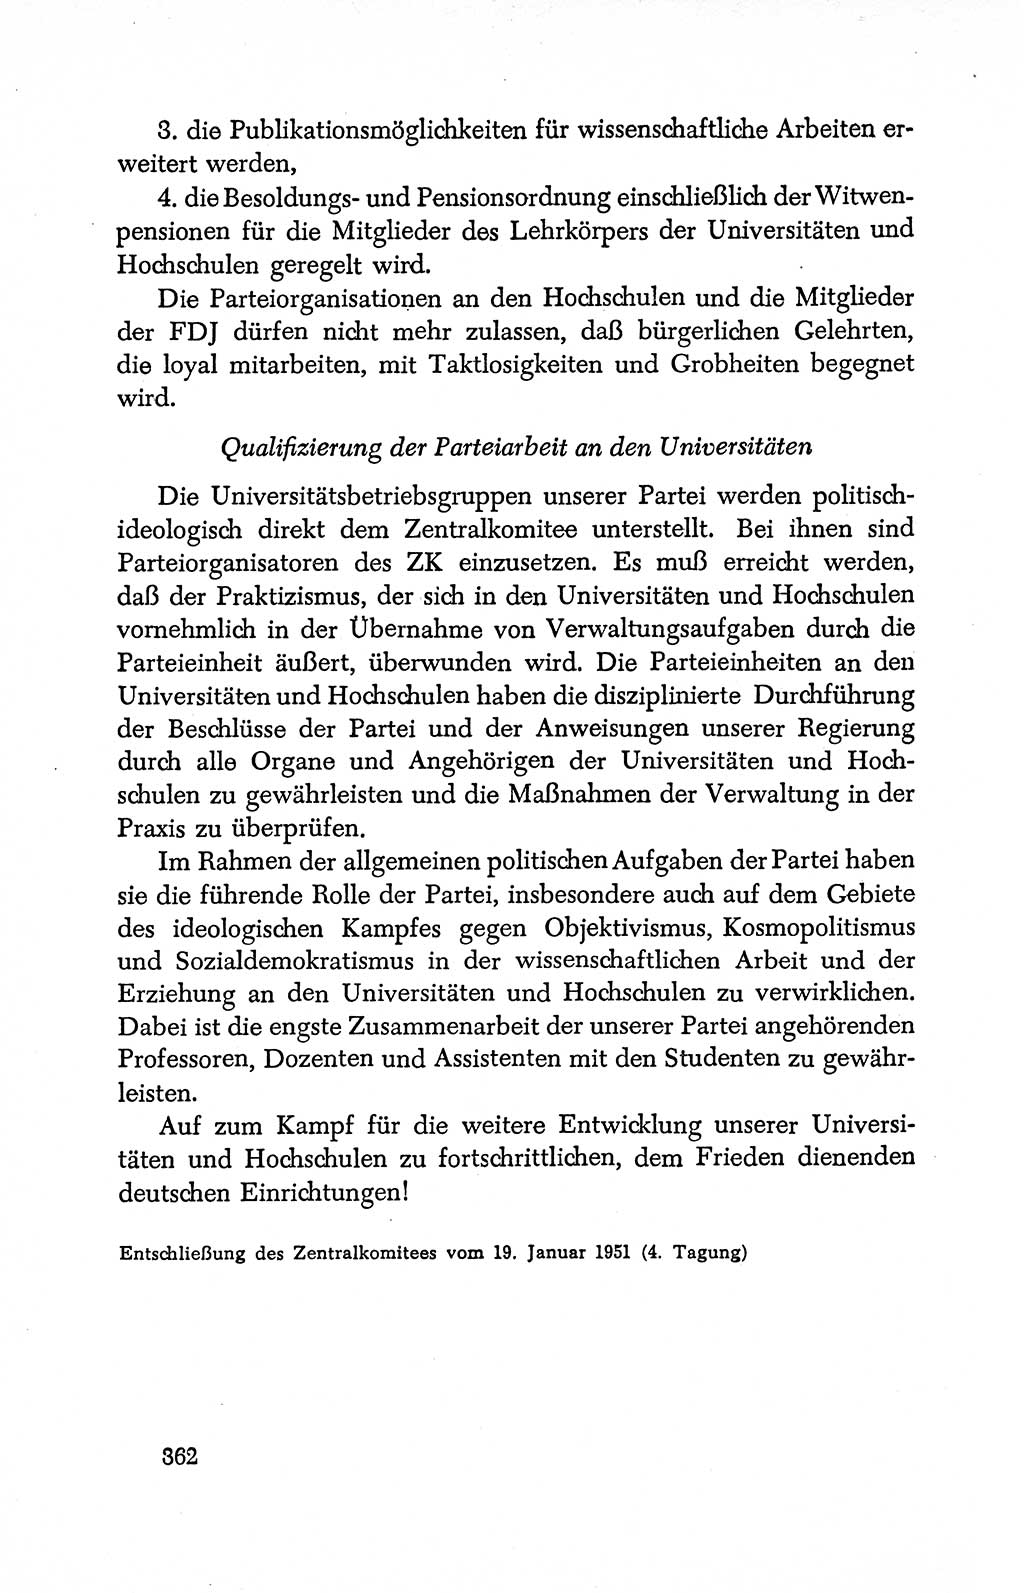 Dokumente der Sozialistischen Einheitspartei Deutschlands (SED) [Deutsche Demokratische Republik (DDR)] 1950-1952, Seite 362 (Dok. SED DDR 1950-1952, S. 362)